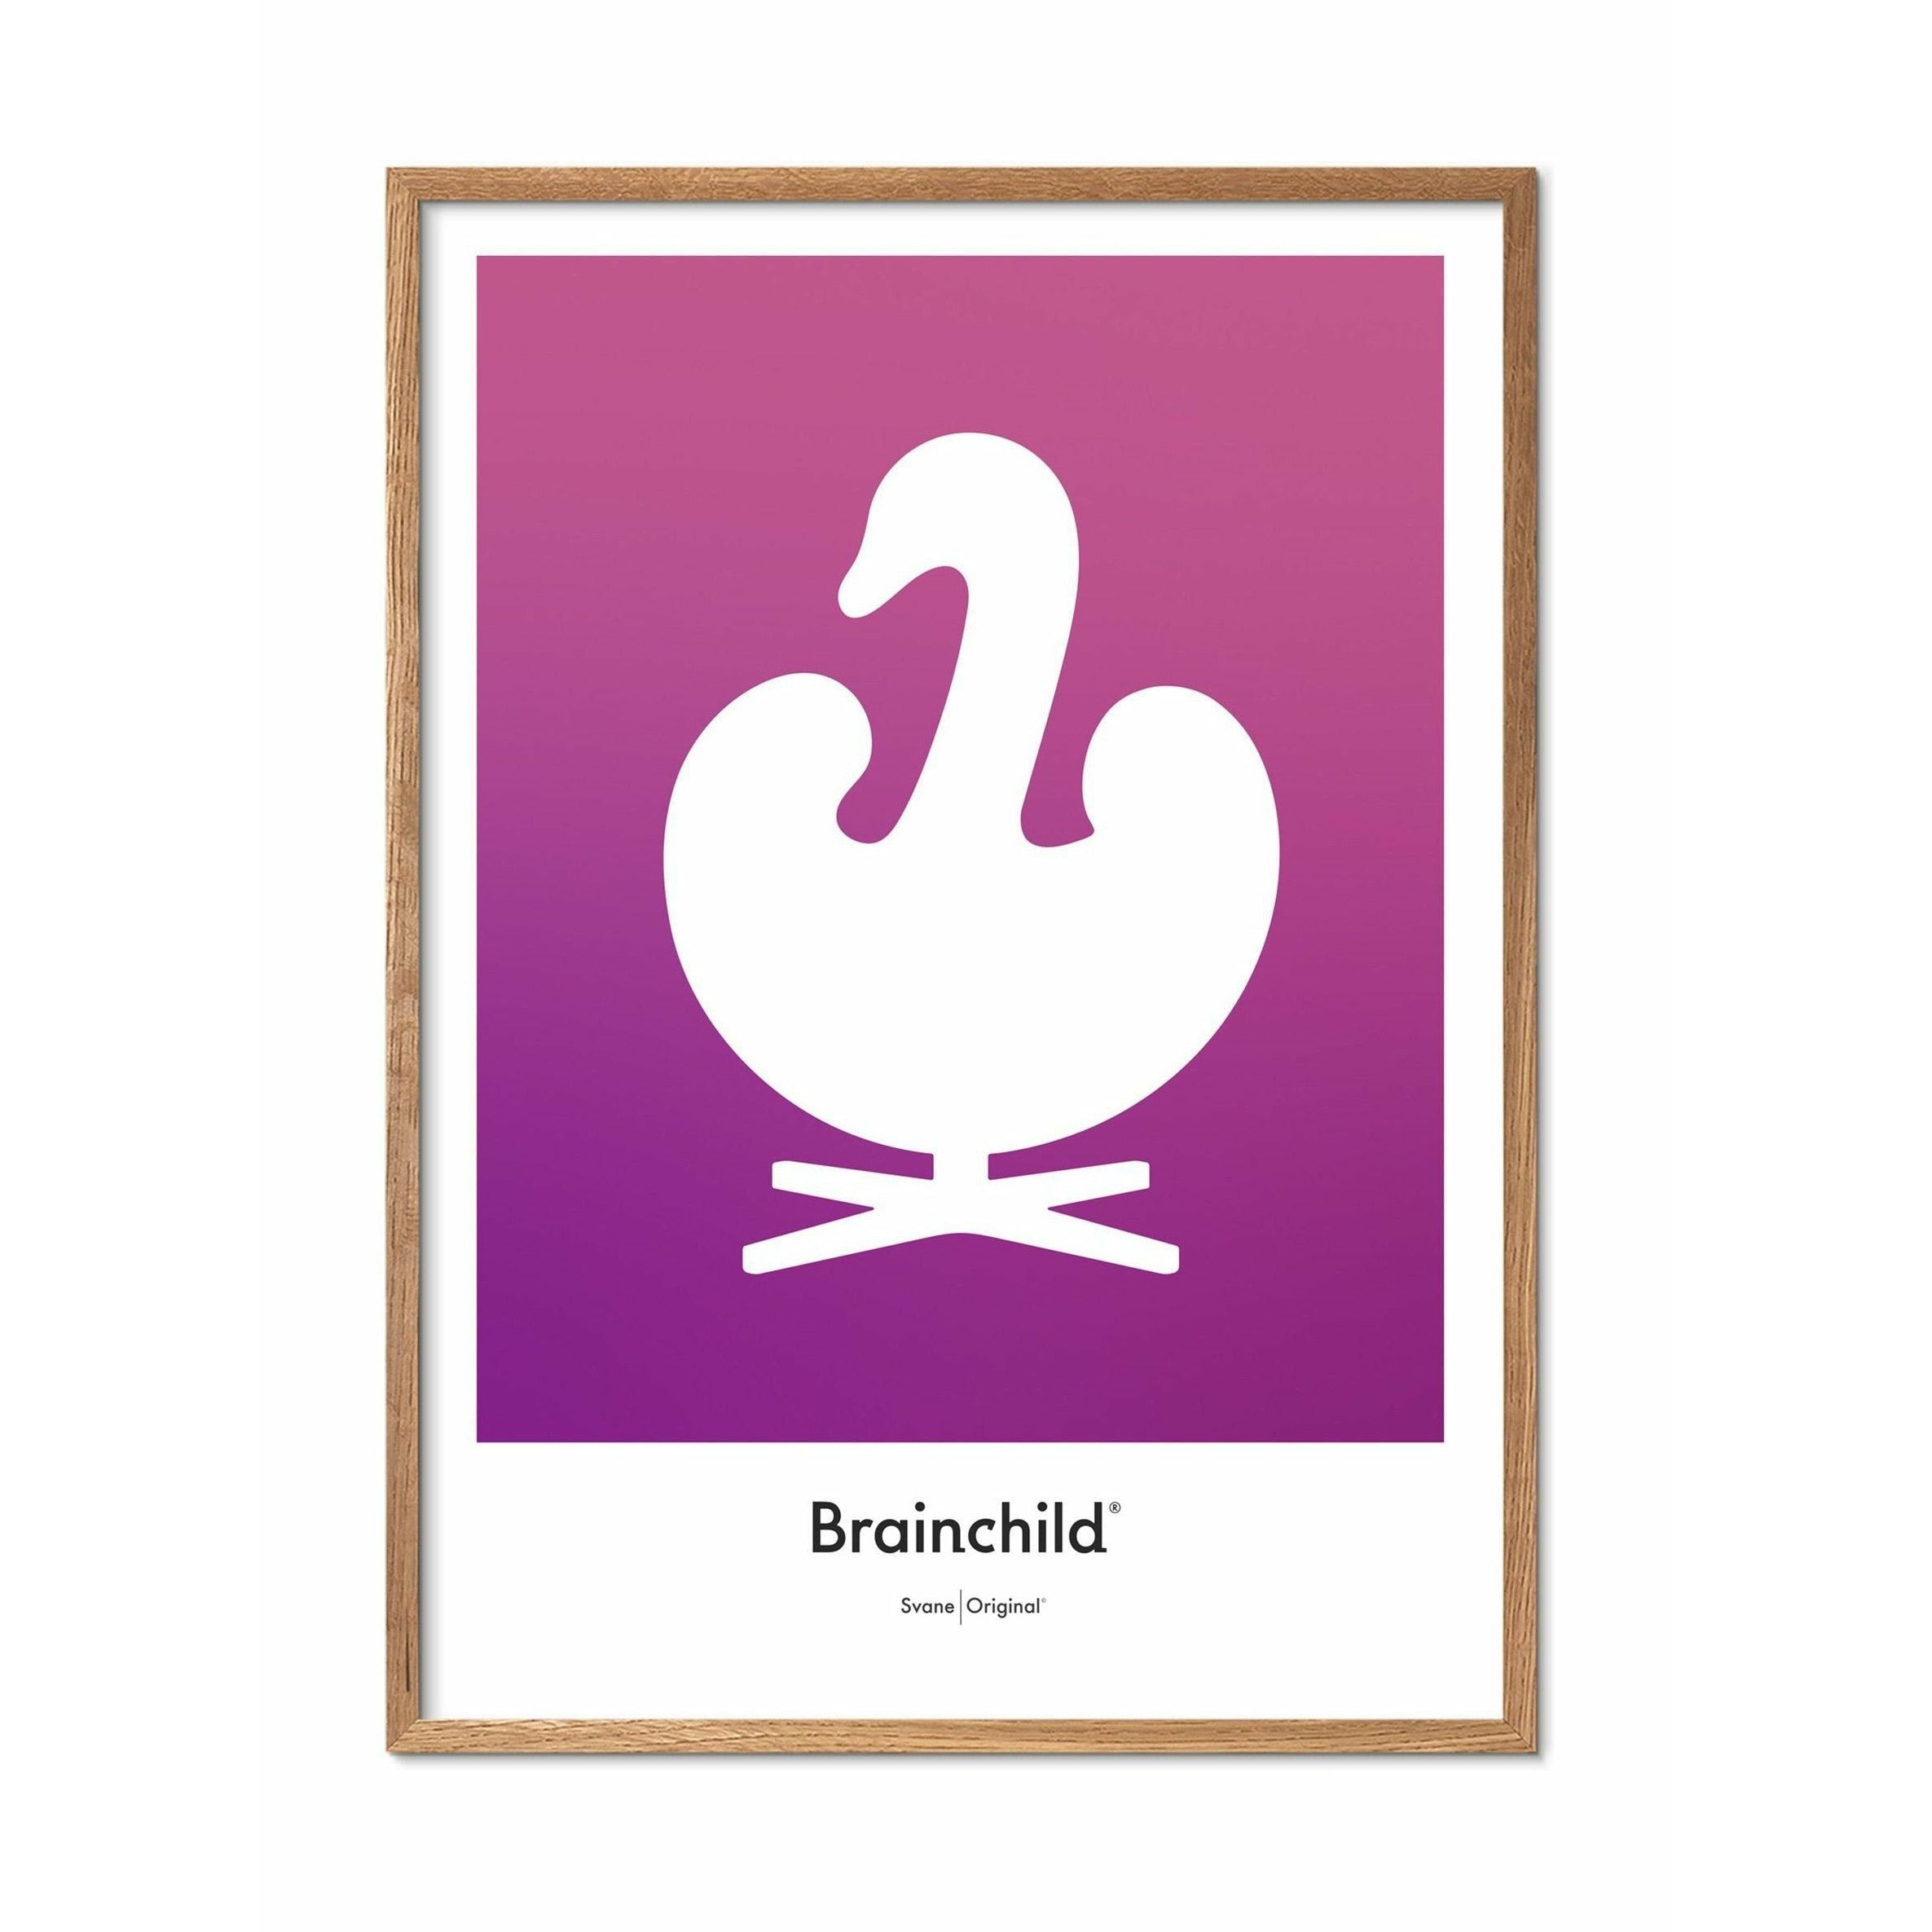 Brainchild Affiche de l'icône de conception de cygne, cadre en bois clair 50 x70 cm, violet